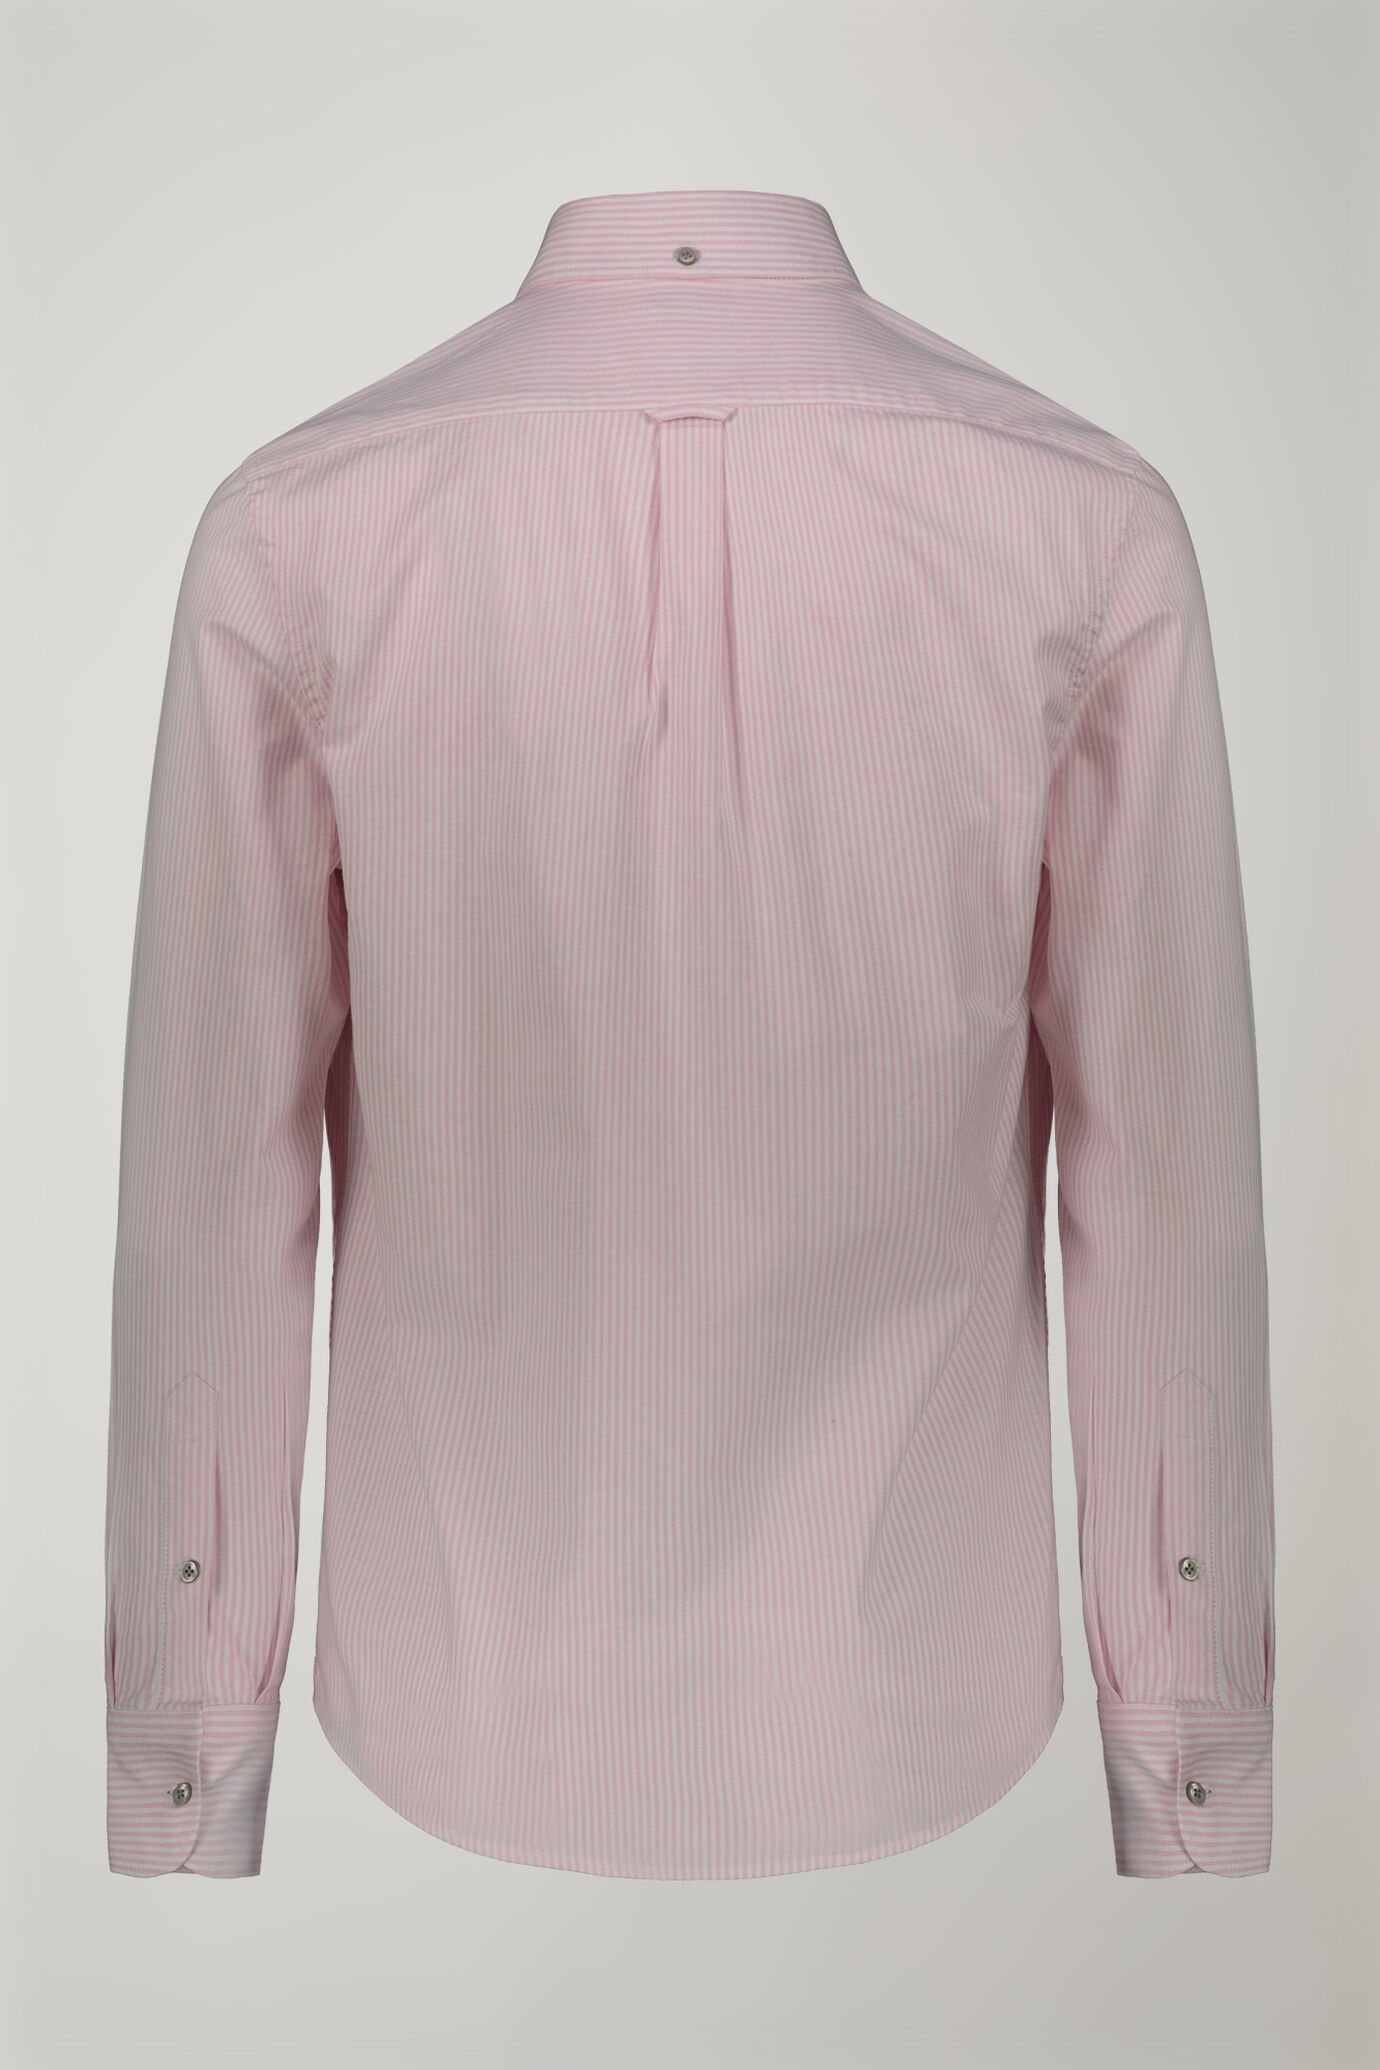 Camicia classica uomo collo button down tessuto Oxford rigato ultra leggero comfort fit image number 6